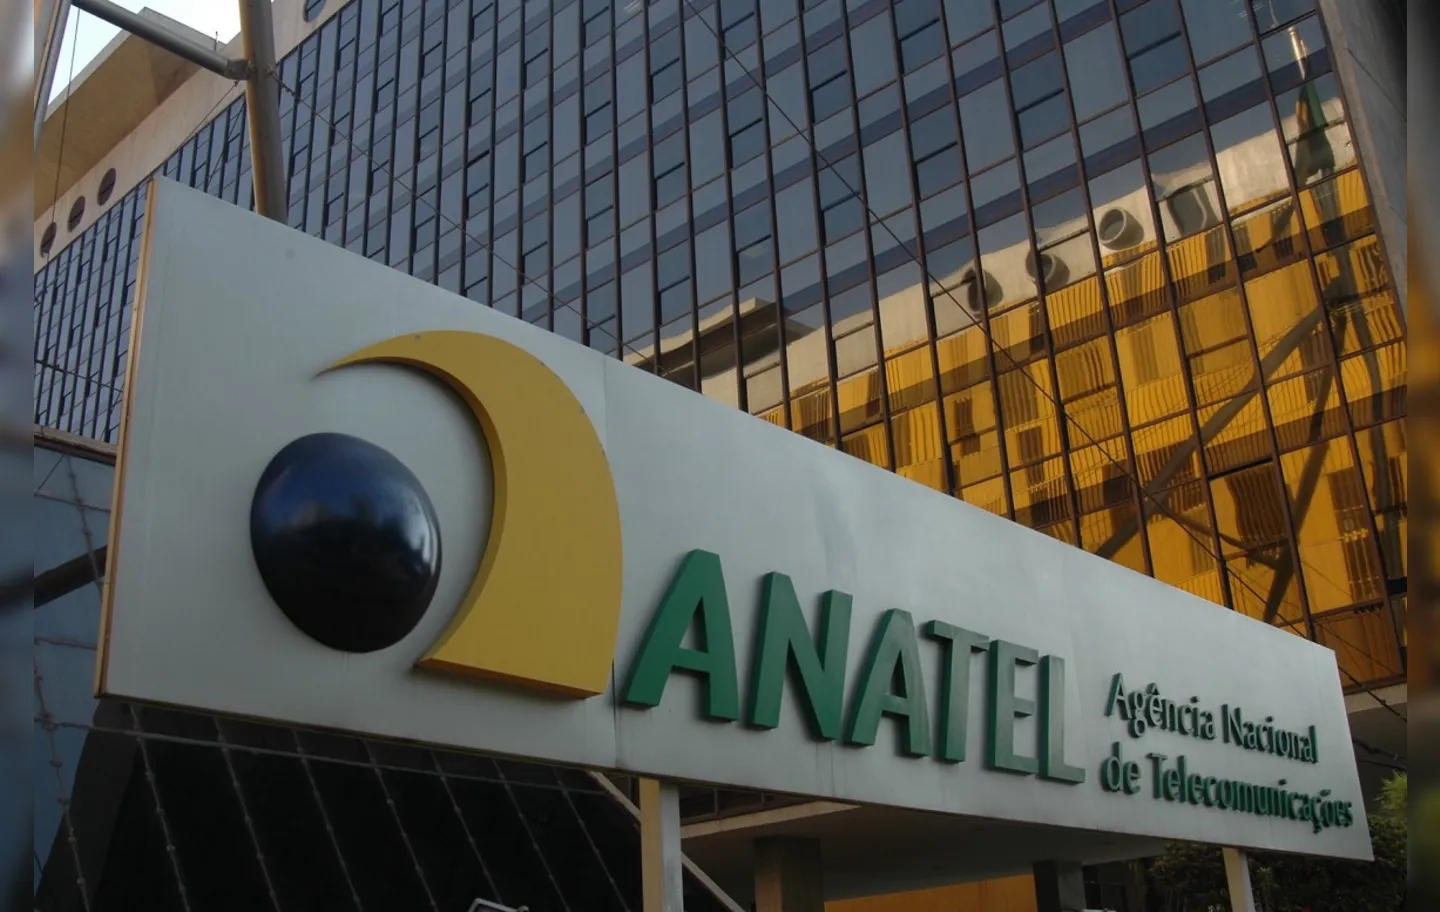 Para convencer os parlamentares ainda resistentes, a Anatel faz lobby com uma proposta